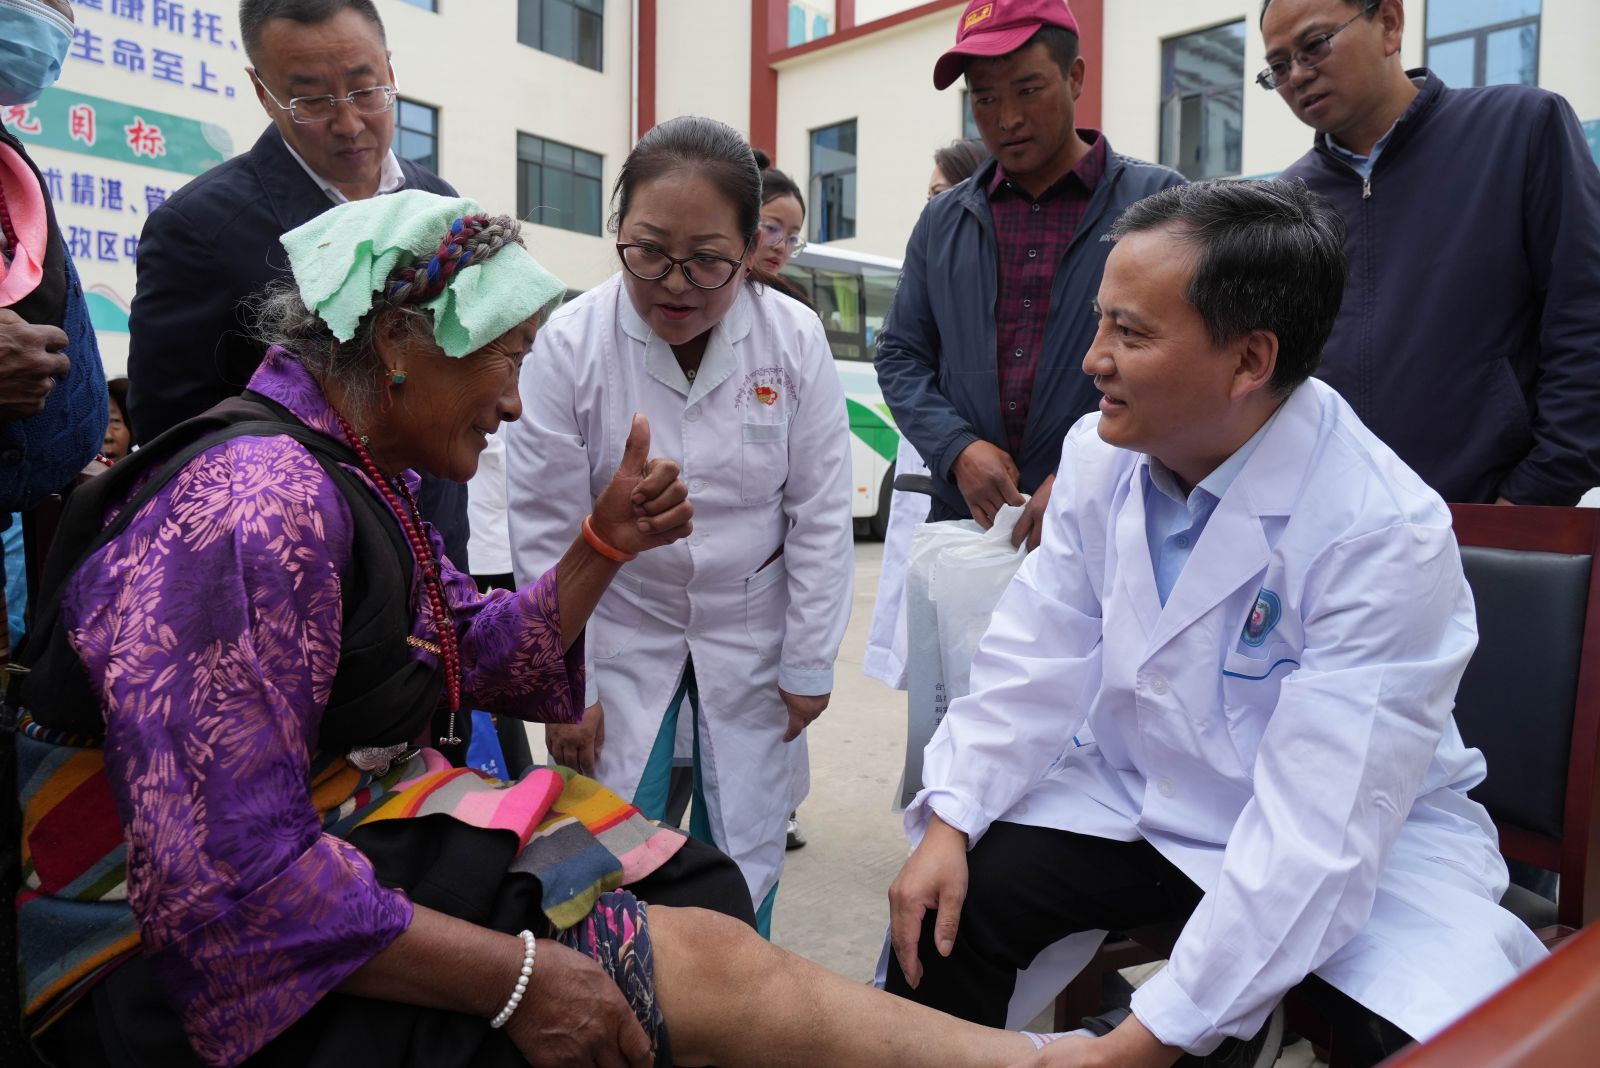 援派干部风采丨不到一年两次进藏 青岛“辫子医生”圆了藏族同胞的“健步梦”